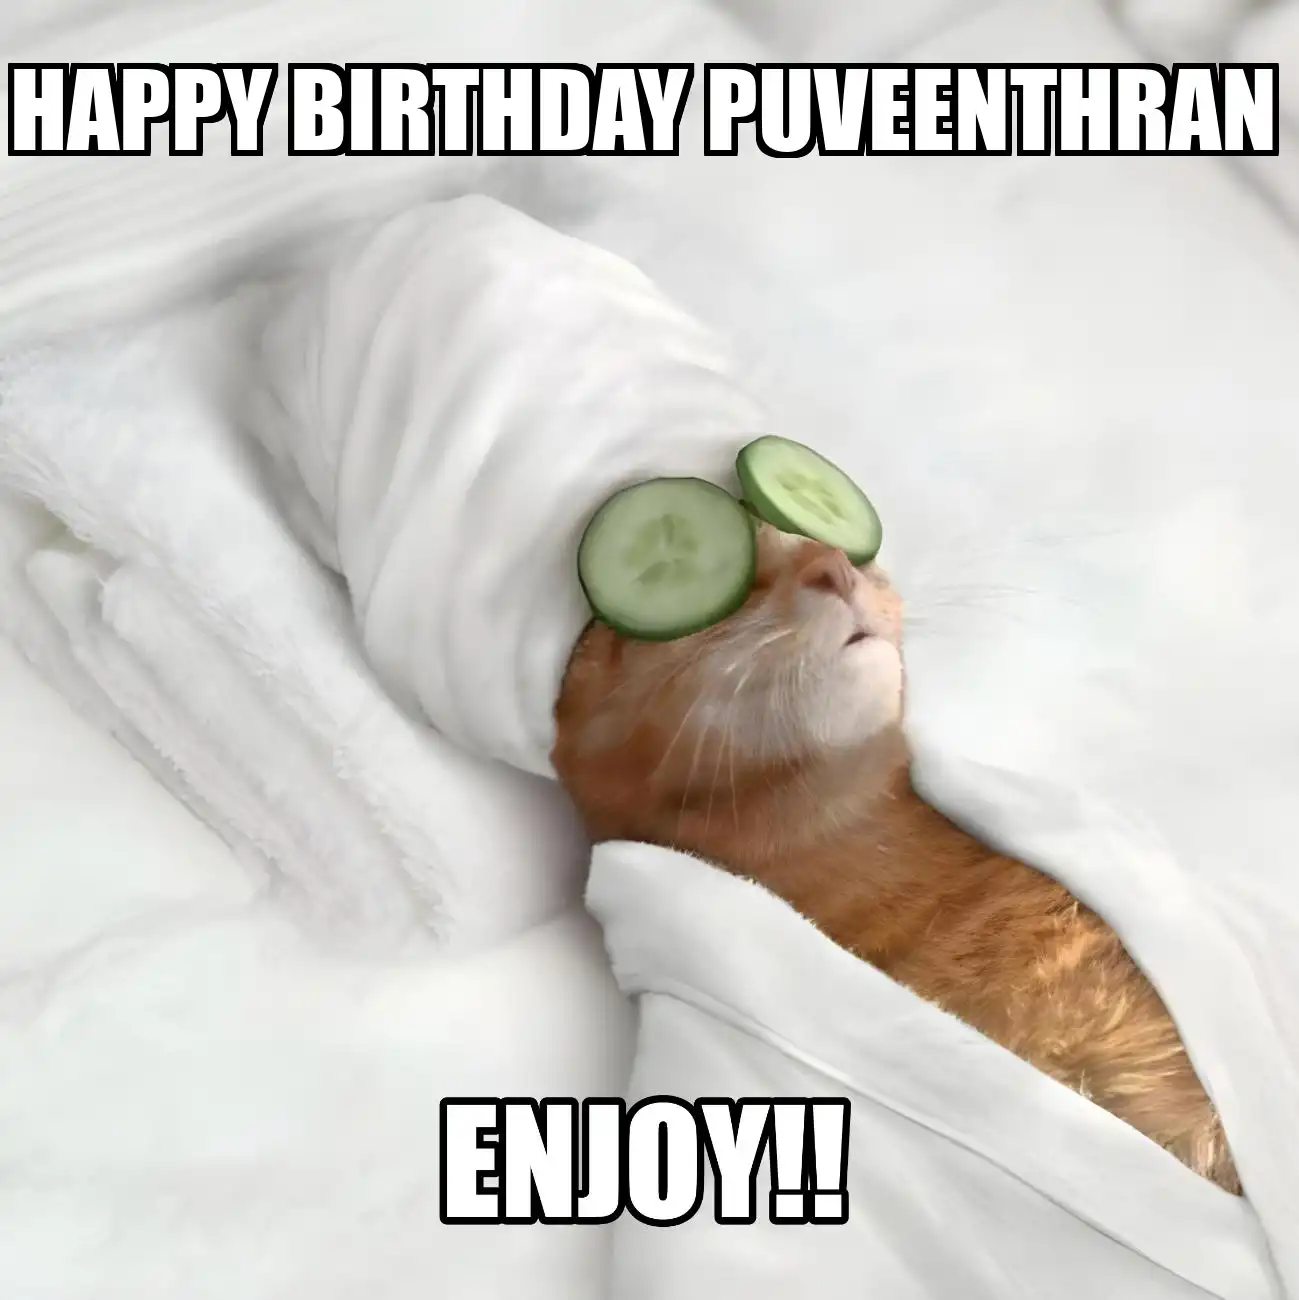 Happy Birthday Puveenthran Enjoy Cat Meme